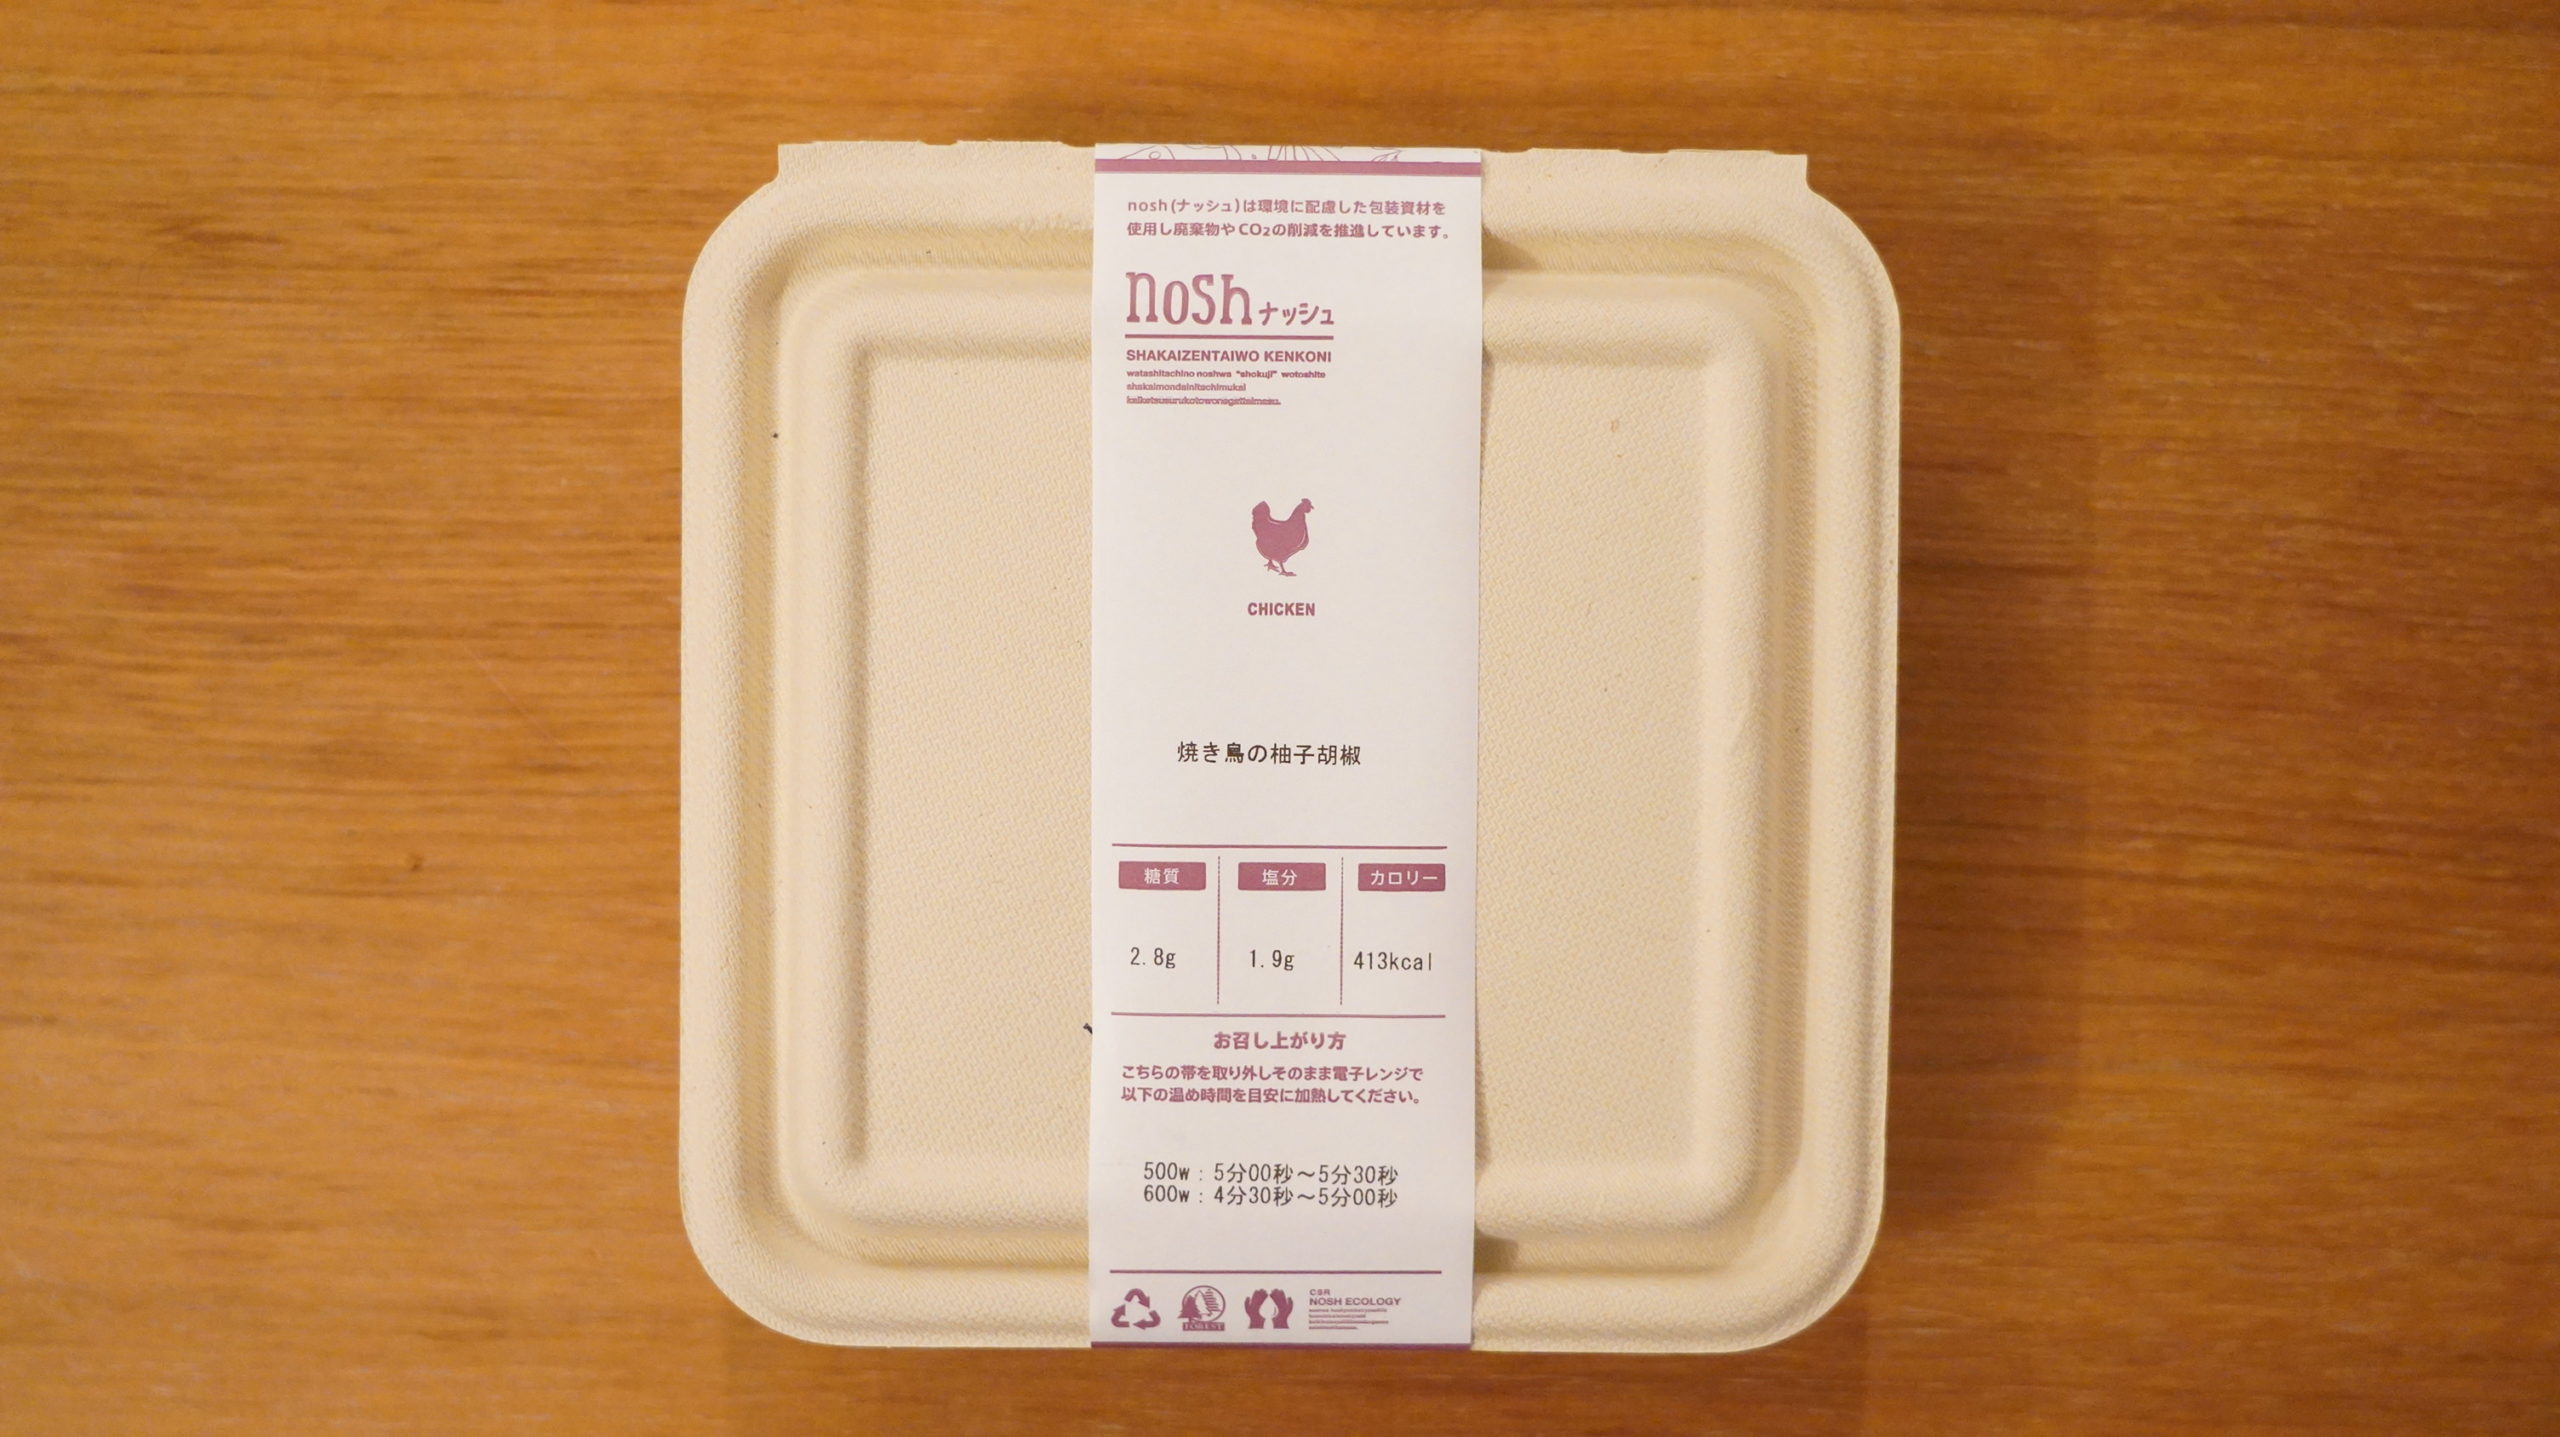 nosh（ナッシュ）の冷凍宅配弁当「焼き鳥の柚子胡椒」の商品情報の写真